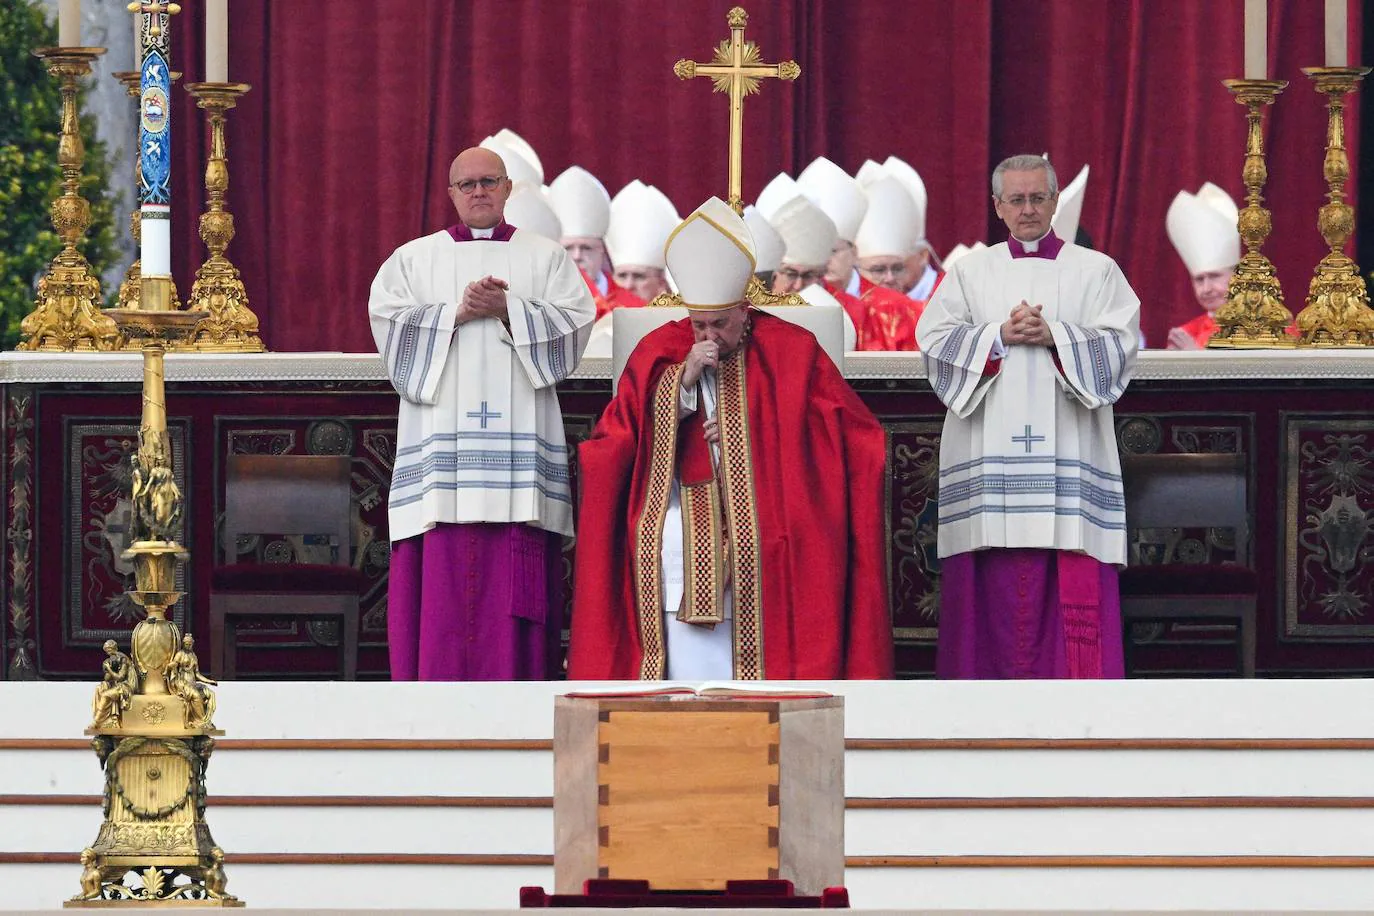 El funeral de Benedicto XVI, en imágenes